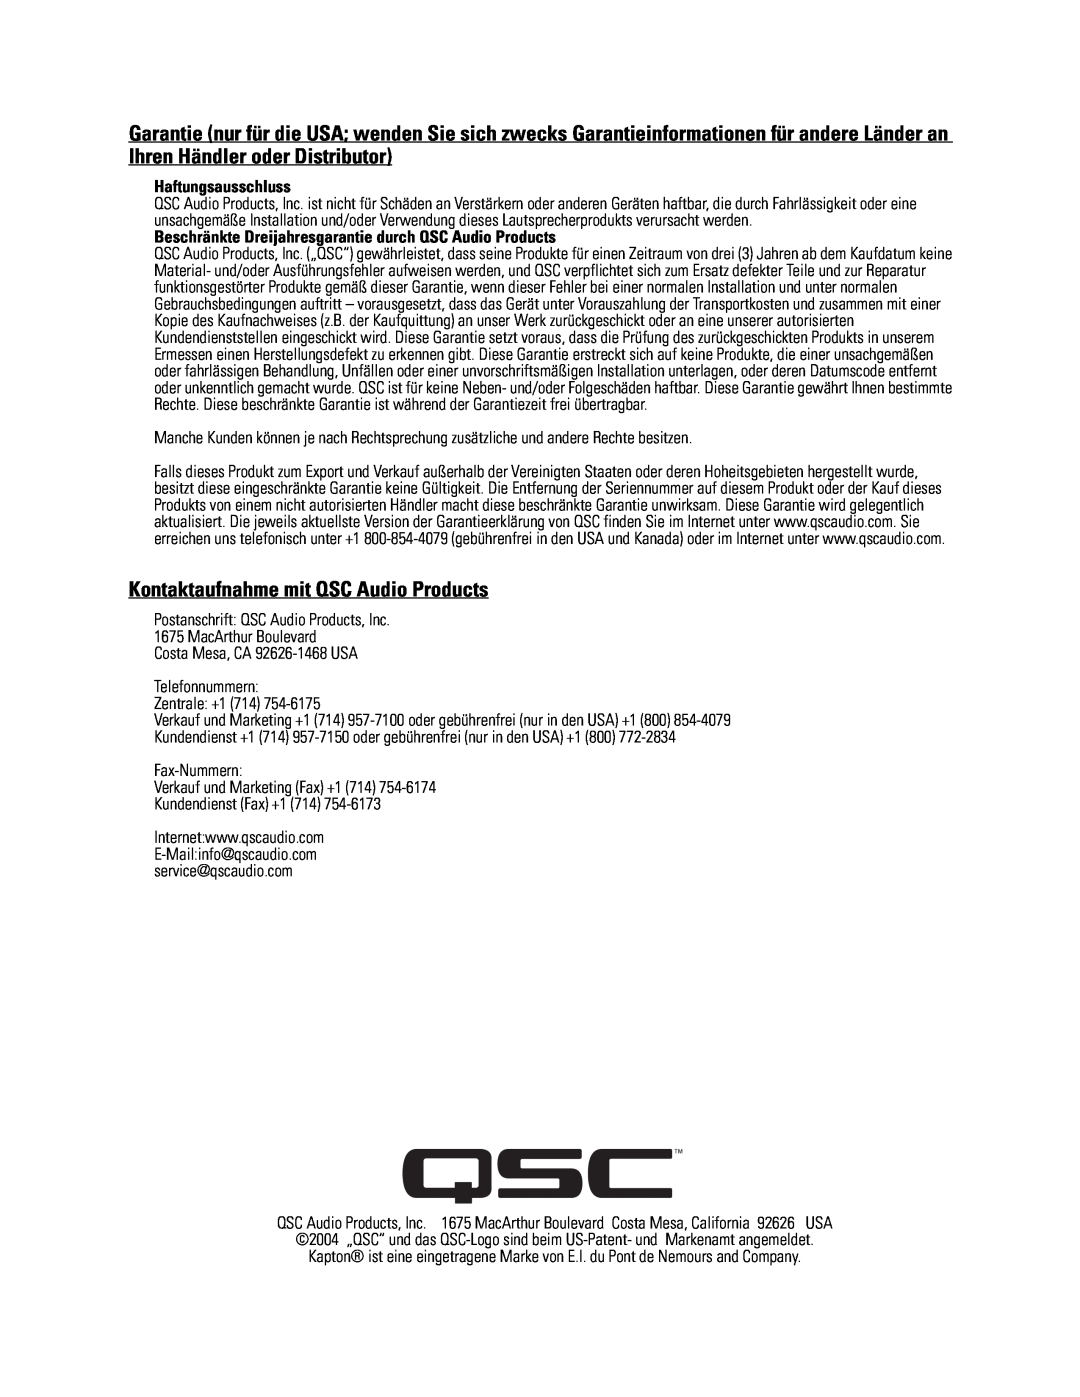 QSC Audio SC-322X specifications Kontaktaufnahme mit QSC Audio Products, Haftungsausschluss 